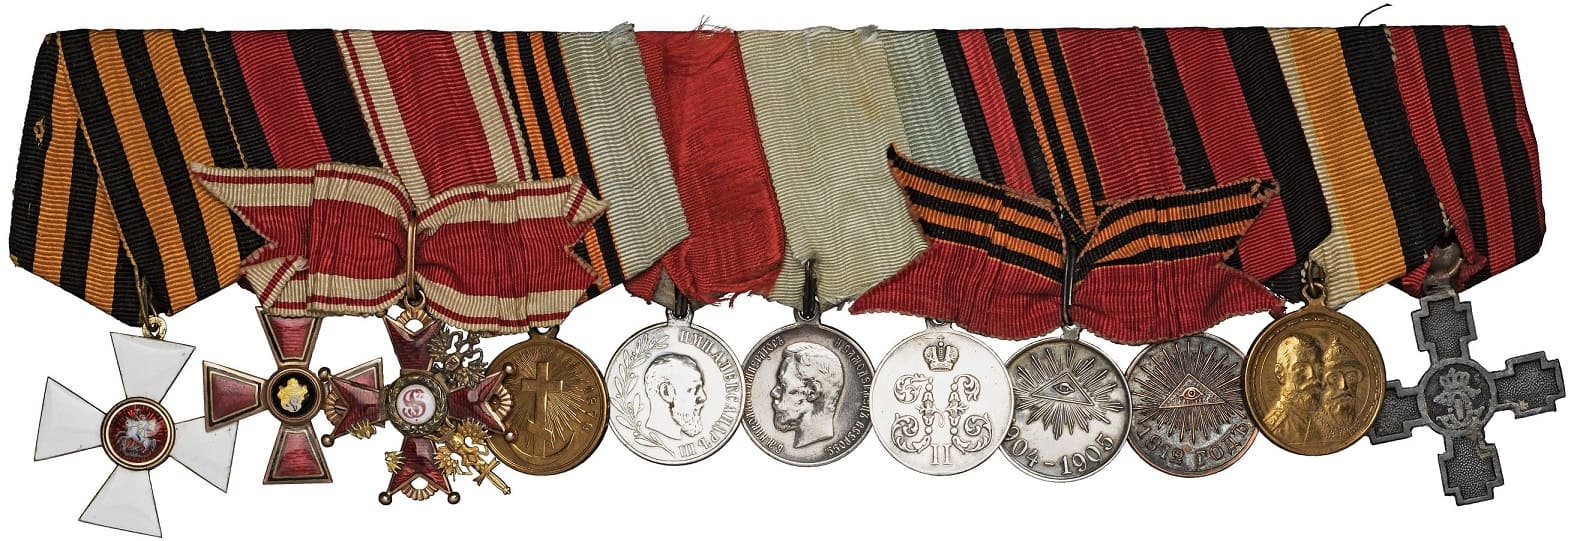 General N.A. Tretyakov medal bar.jpg